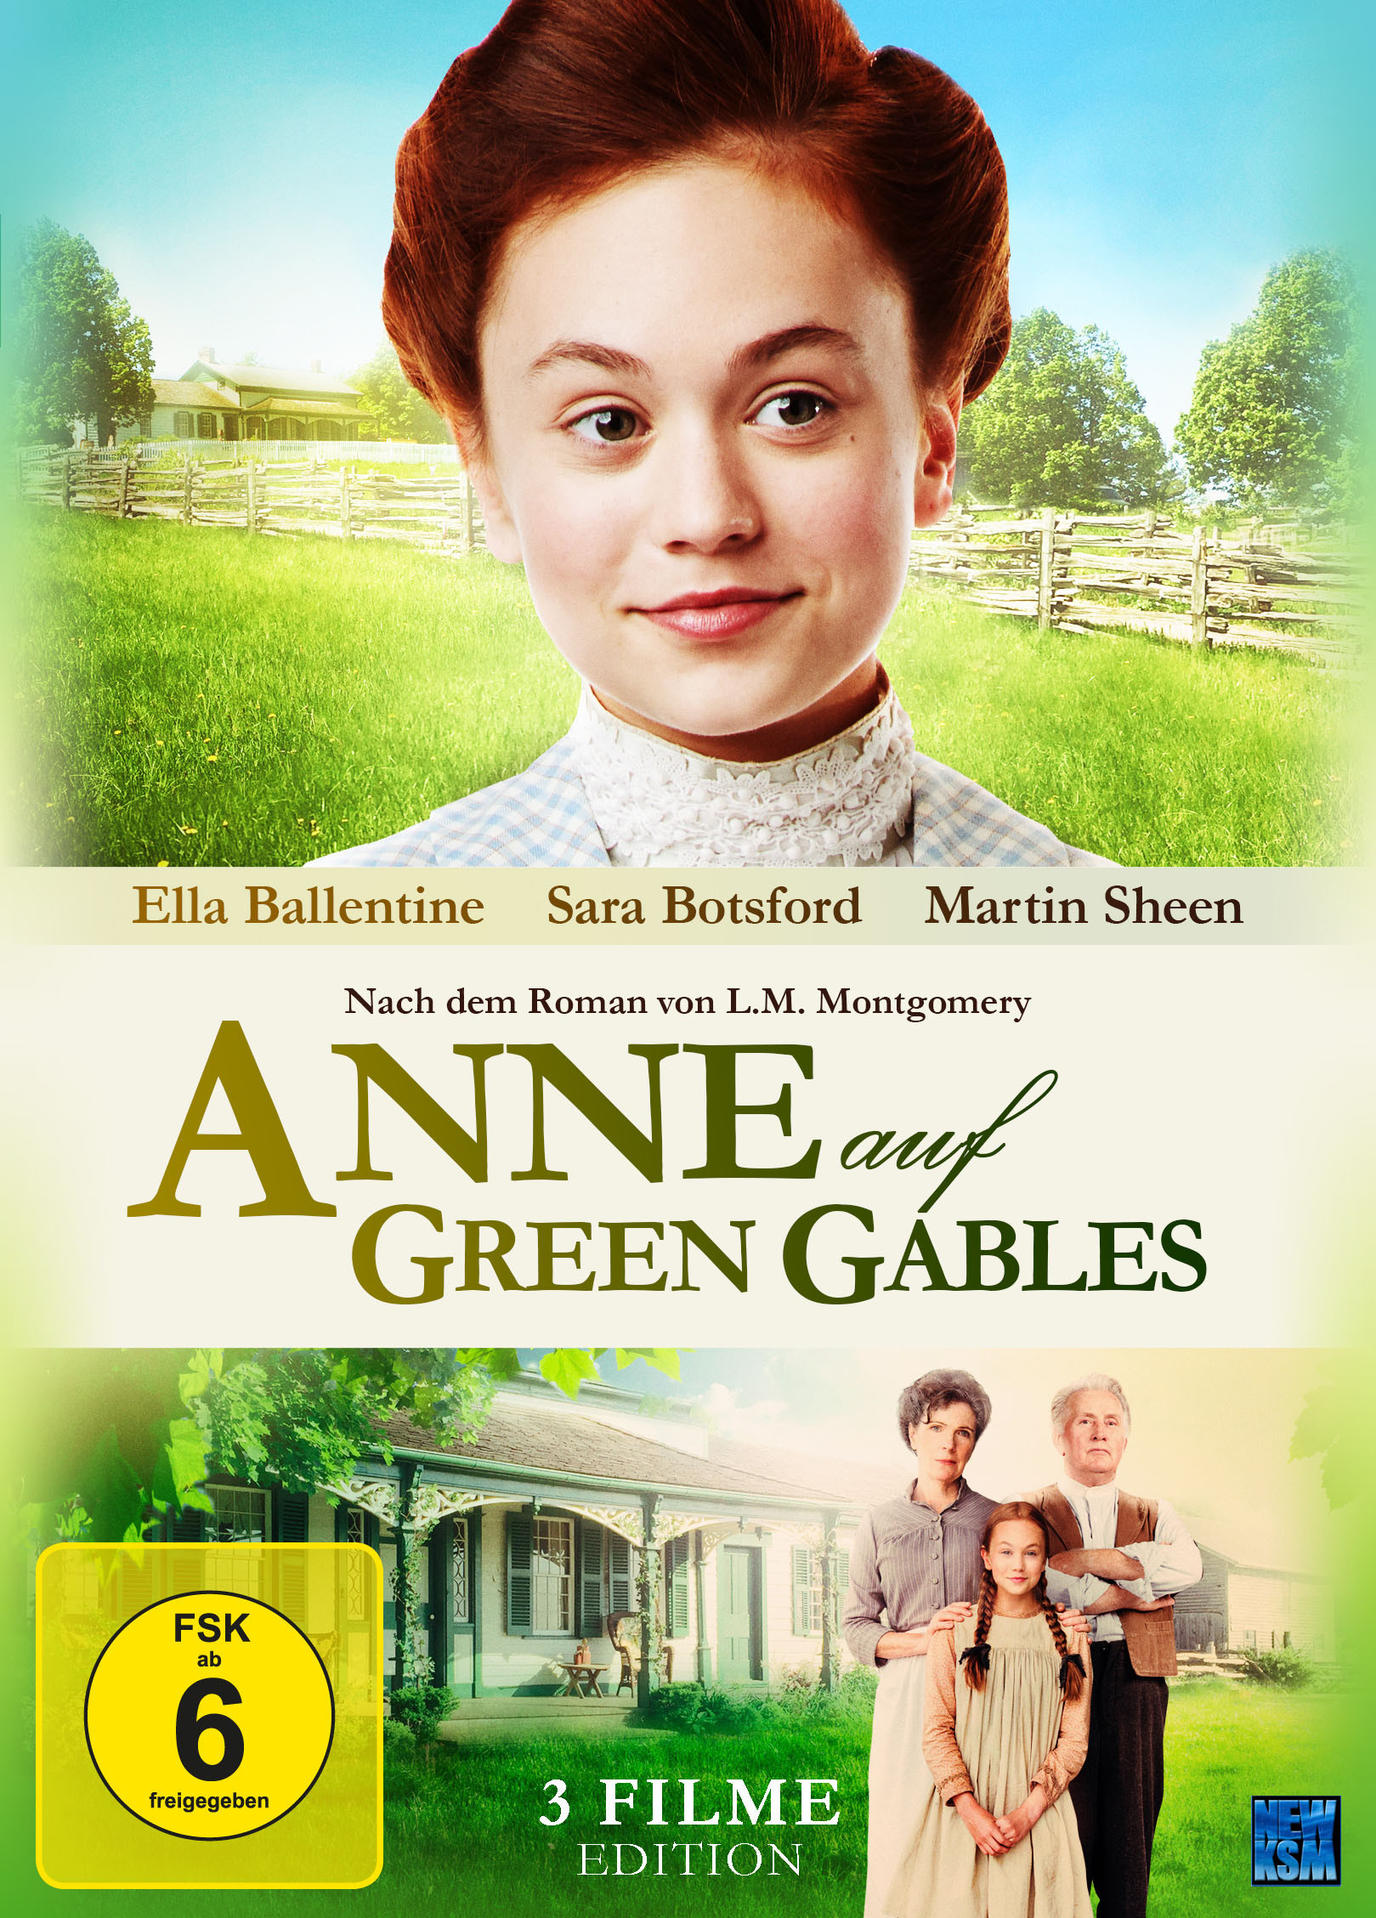 Anne auf Green Gables - DVD Gesamtedition Teil 1-3